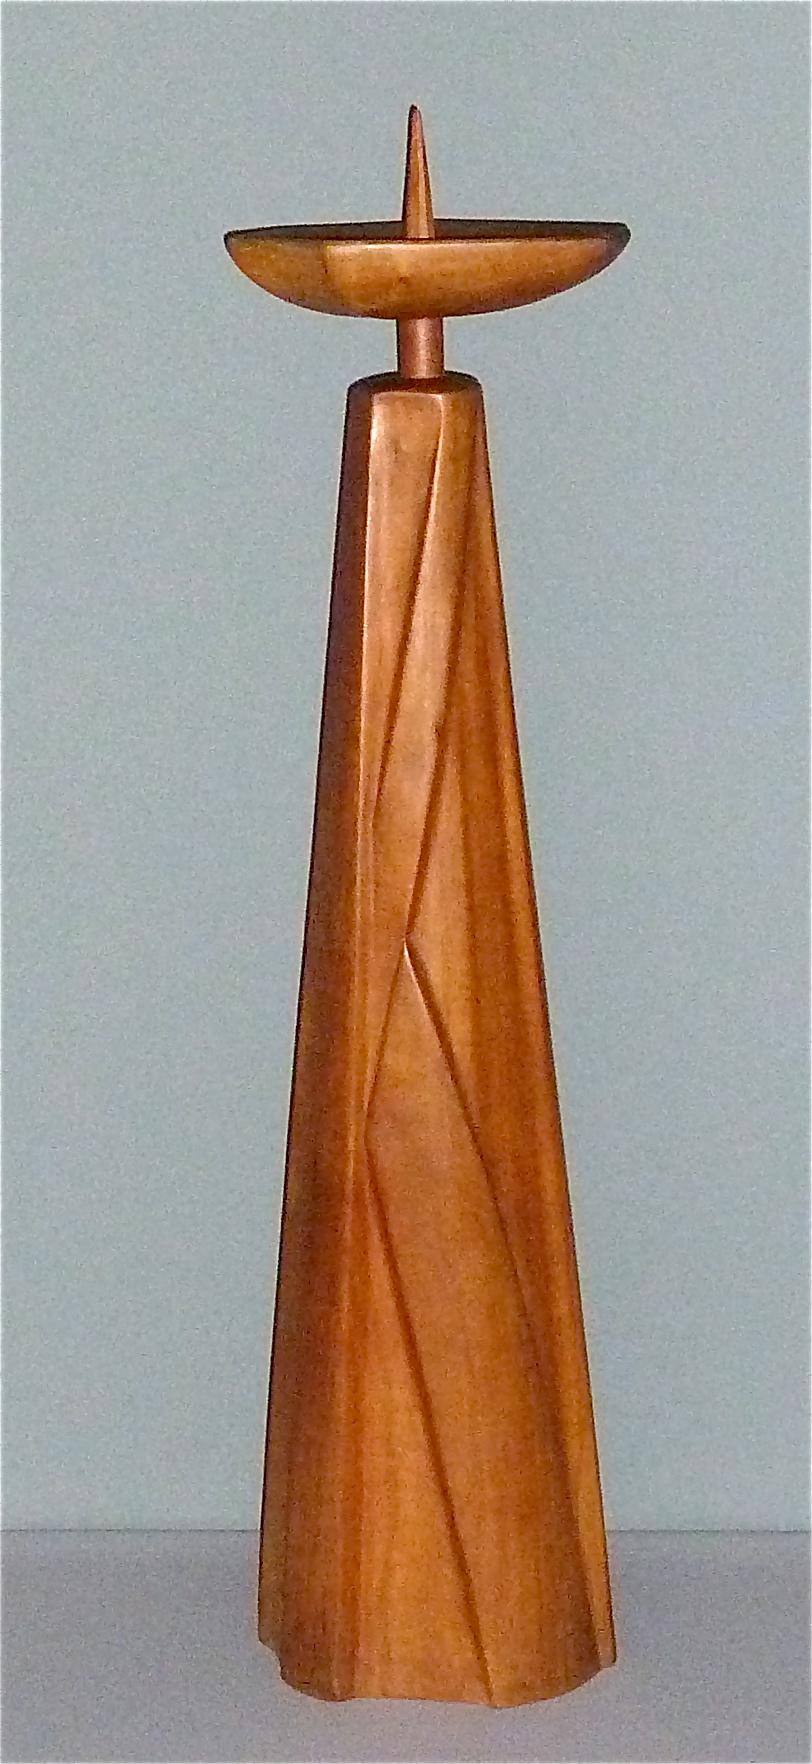 Skulpturaler großer geschnitzter Kerzenhalter aus massivem Nussholz, hergestellt in Deutschland um 1930-1950, Kreis der Rudolf Steiner Werkstätten / Werkstatt Dornach Zuschreibung. Unten signiert mit einer nicht identifizierten Künstlermarke, die